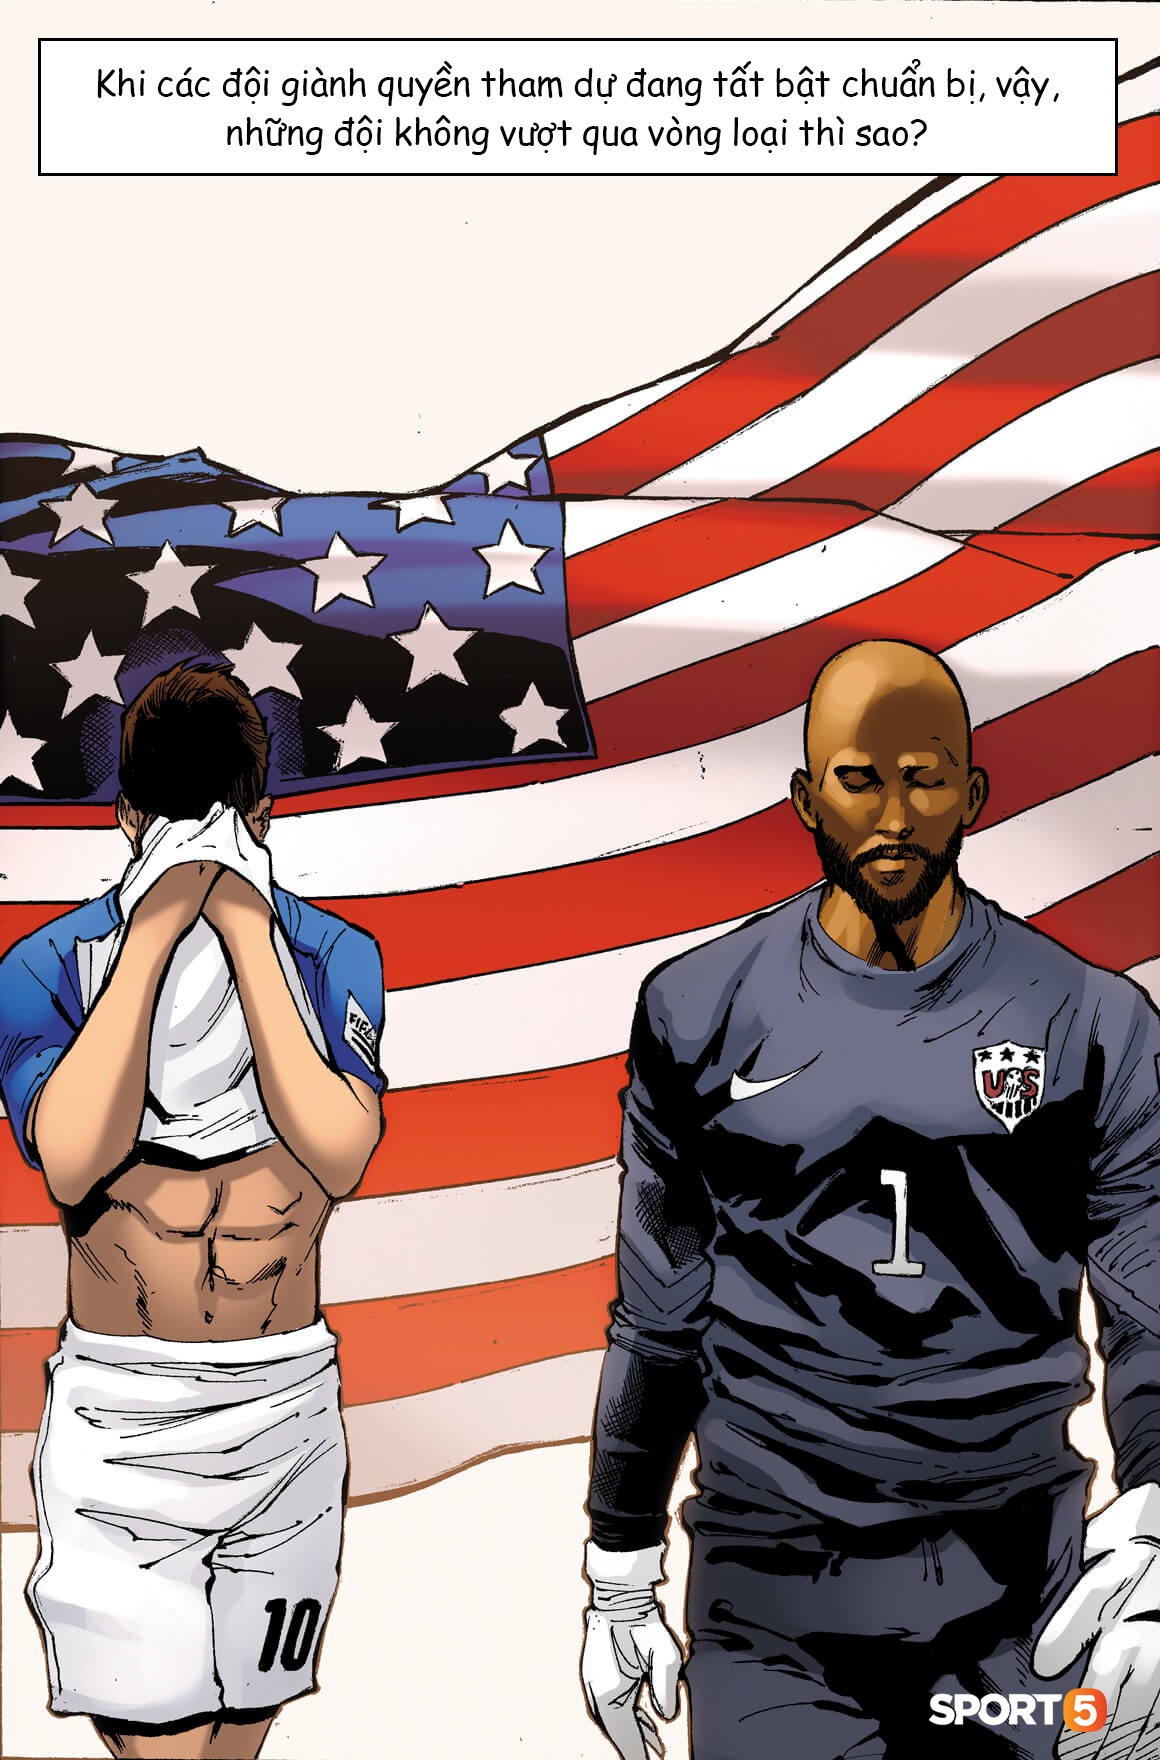 Truyện World Cup phong cách Marvel: Giấc mơ Mỹ và kỳ nghỉ bên hai chú chó của Sanchez (chương 5) - Ảnh 1.